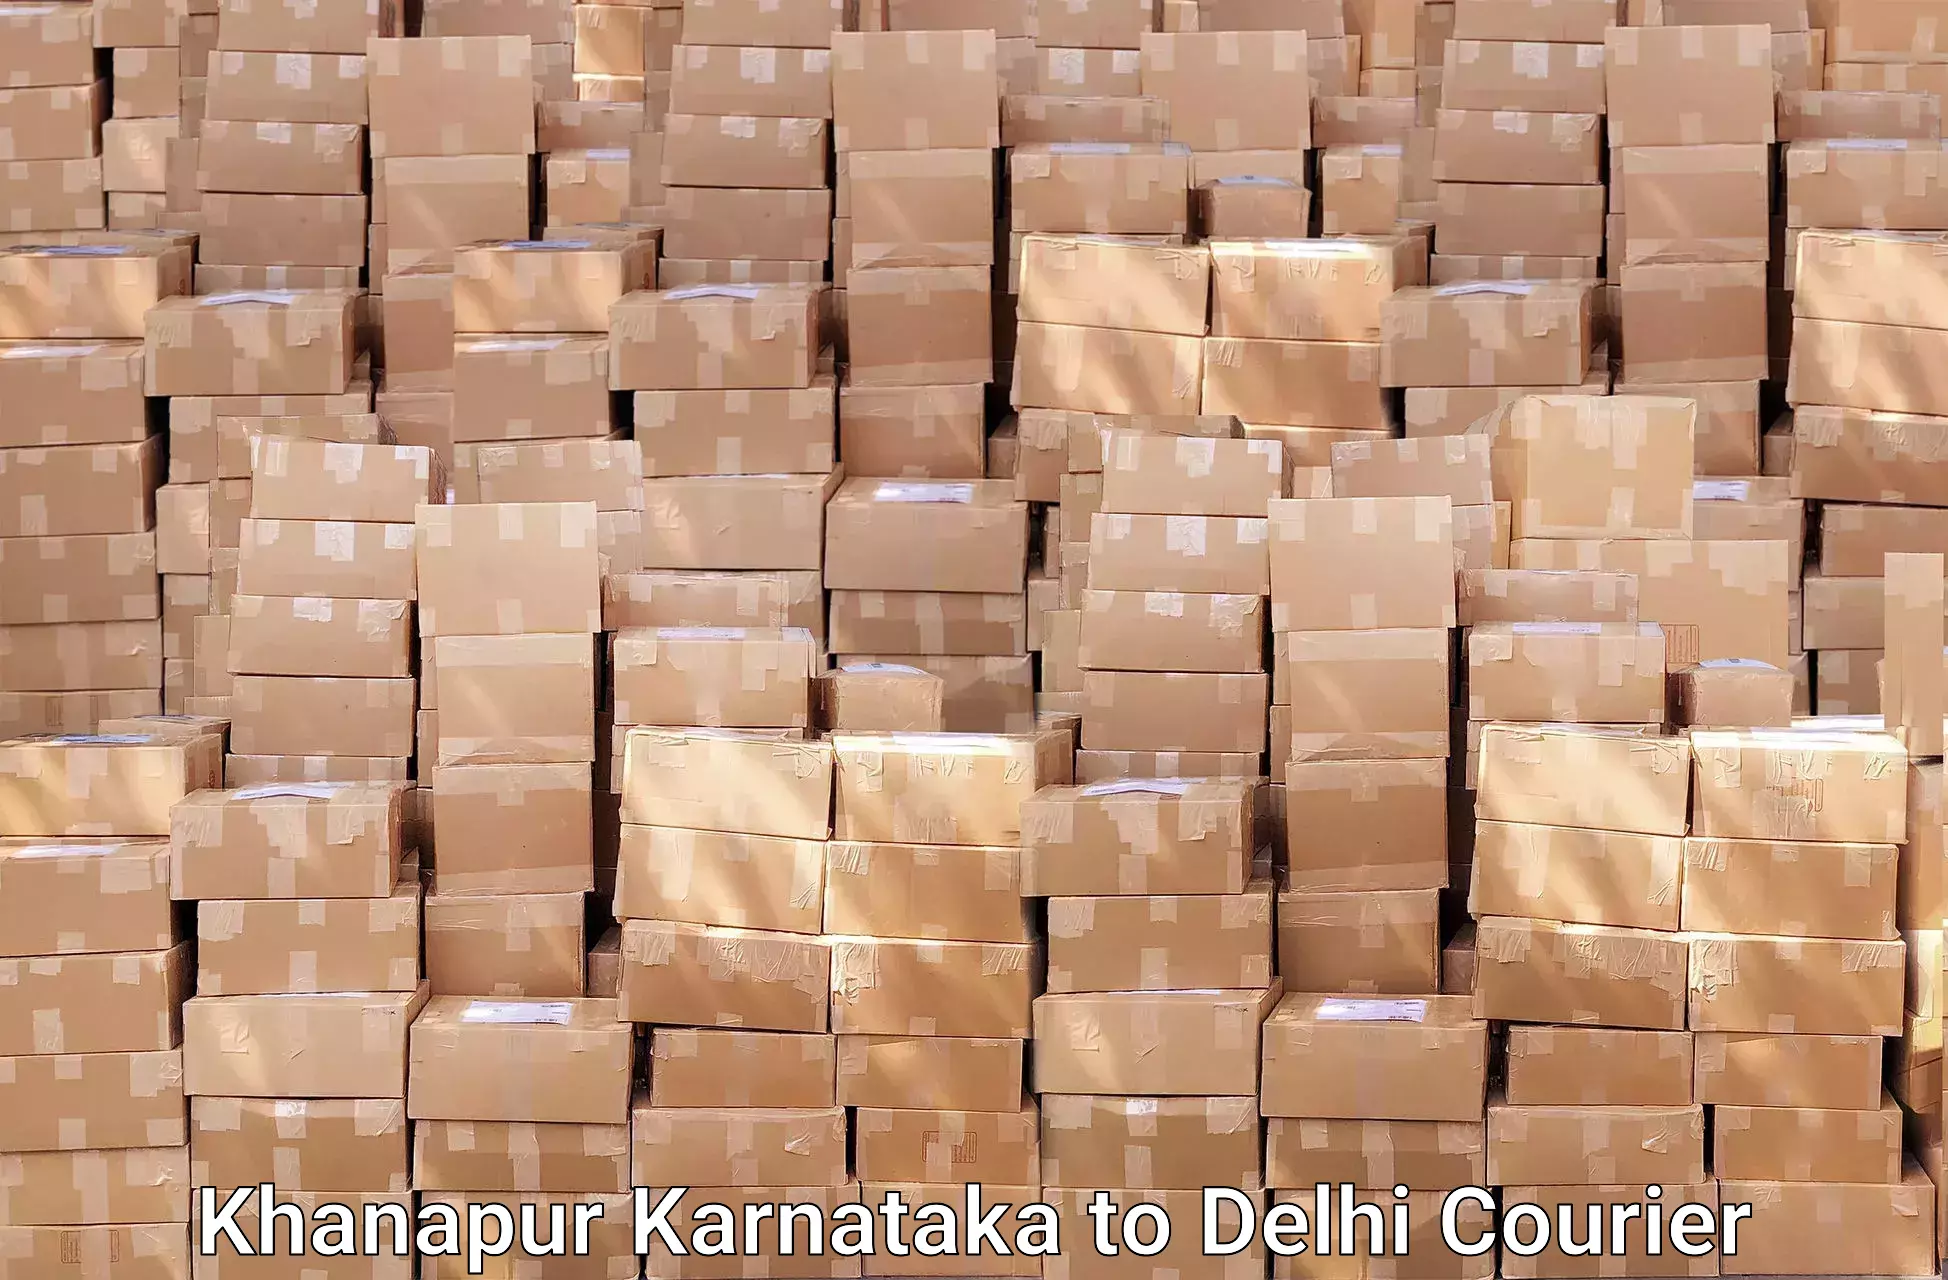 Reliable moving solutions Khanapur Karnataka to Delhi